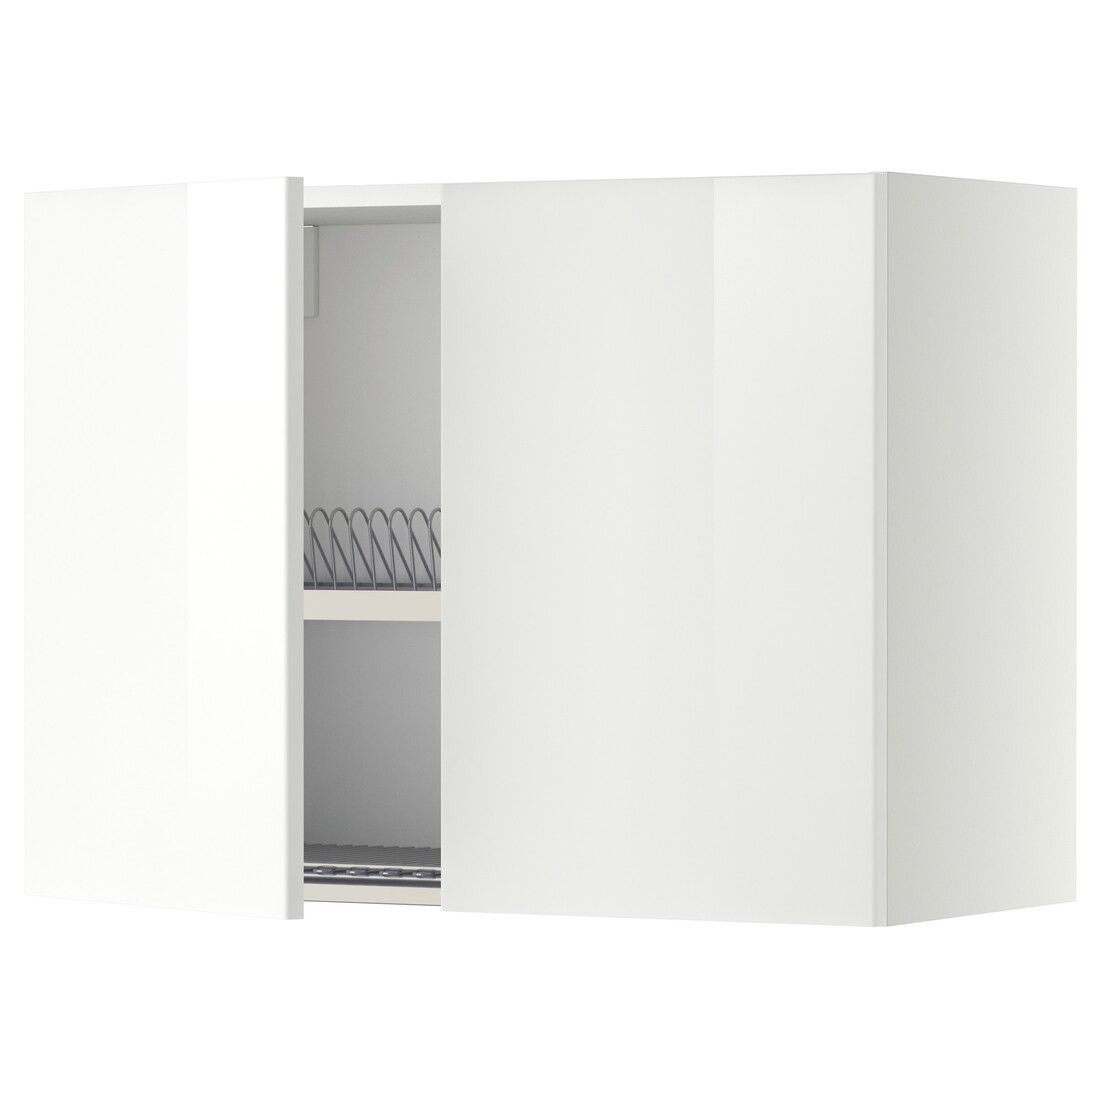 IKEA METOD МЕТОД Навесной шкаф с посудной сушилкой / 2 дверцы, белый / Ringhult белый, 80x60 см 29457452 294.574.52